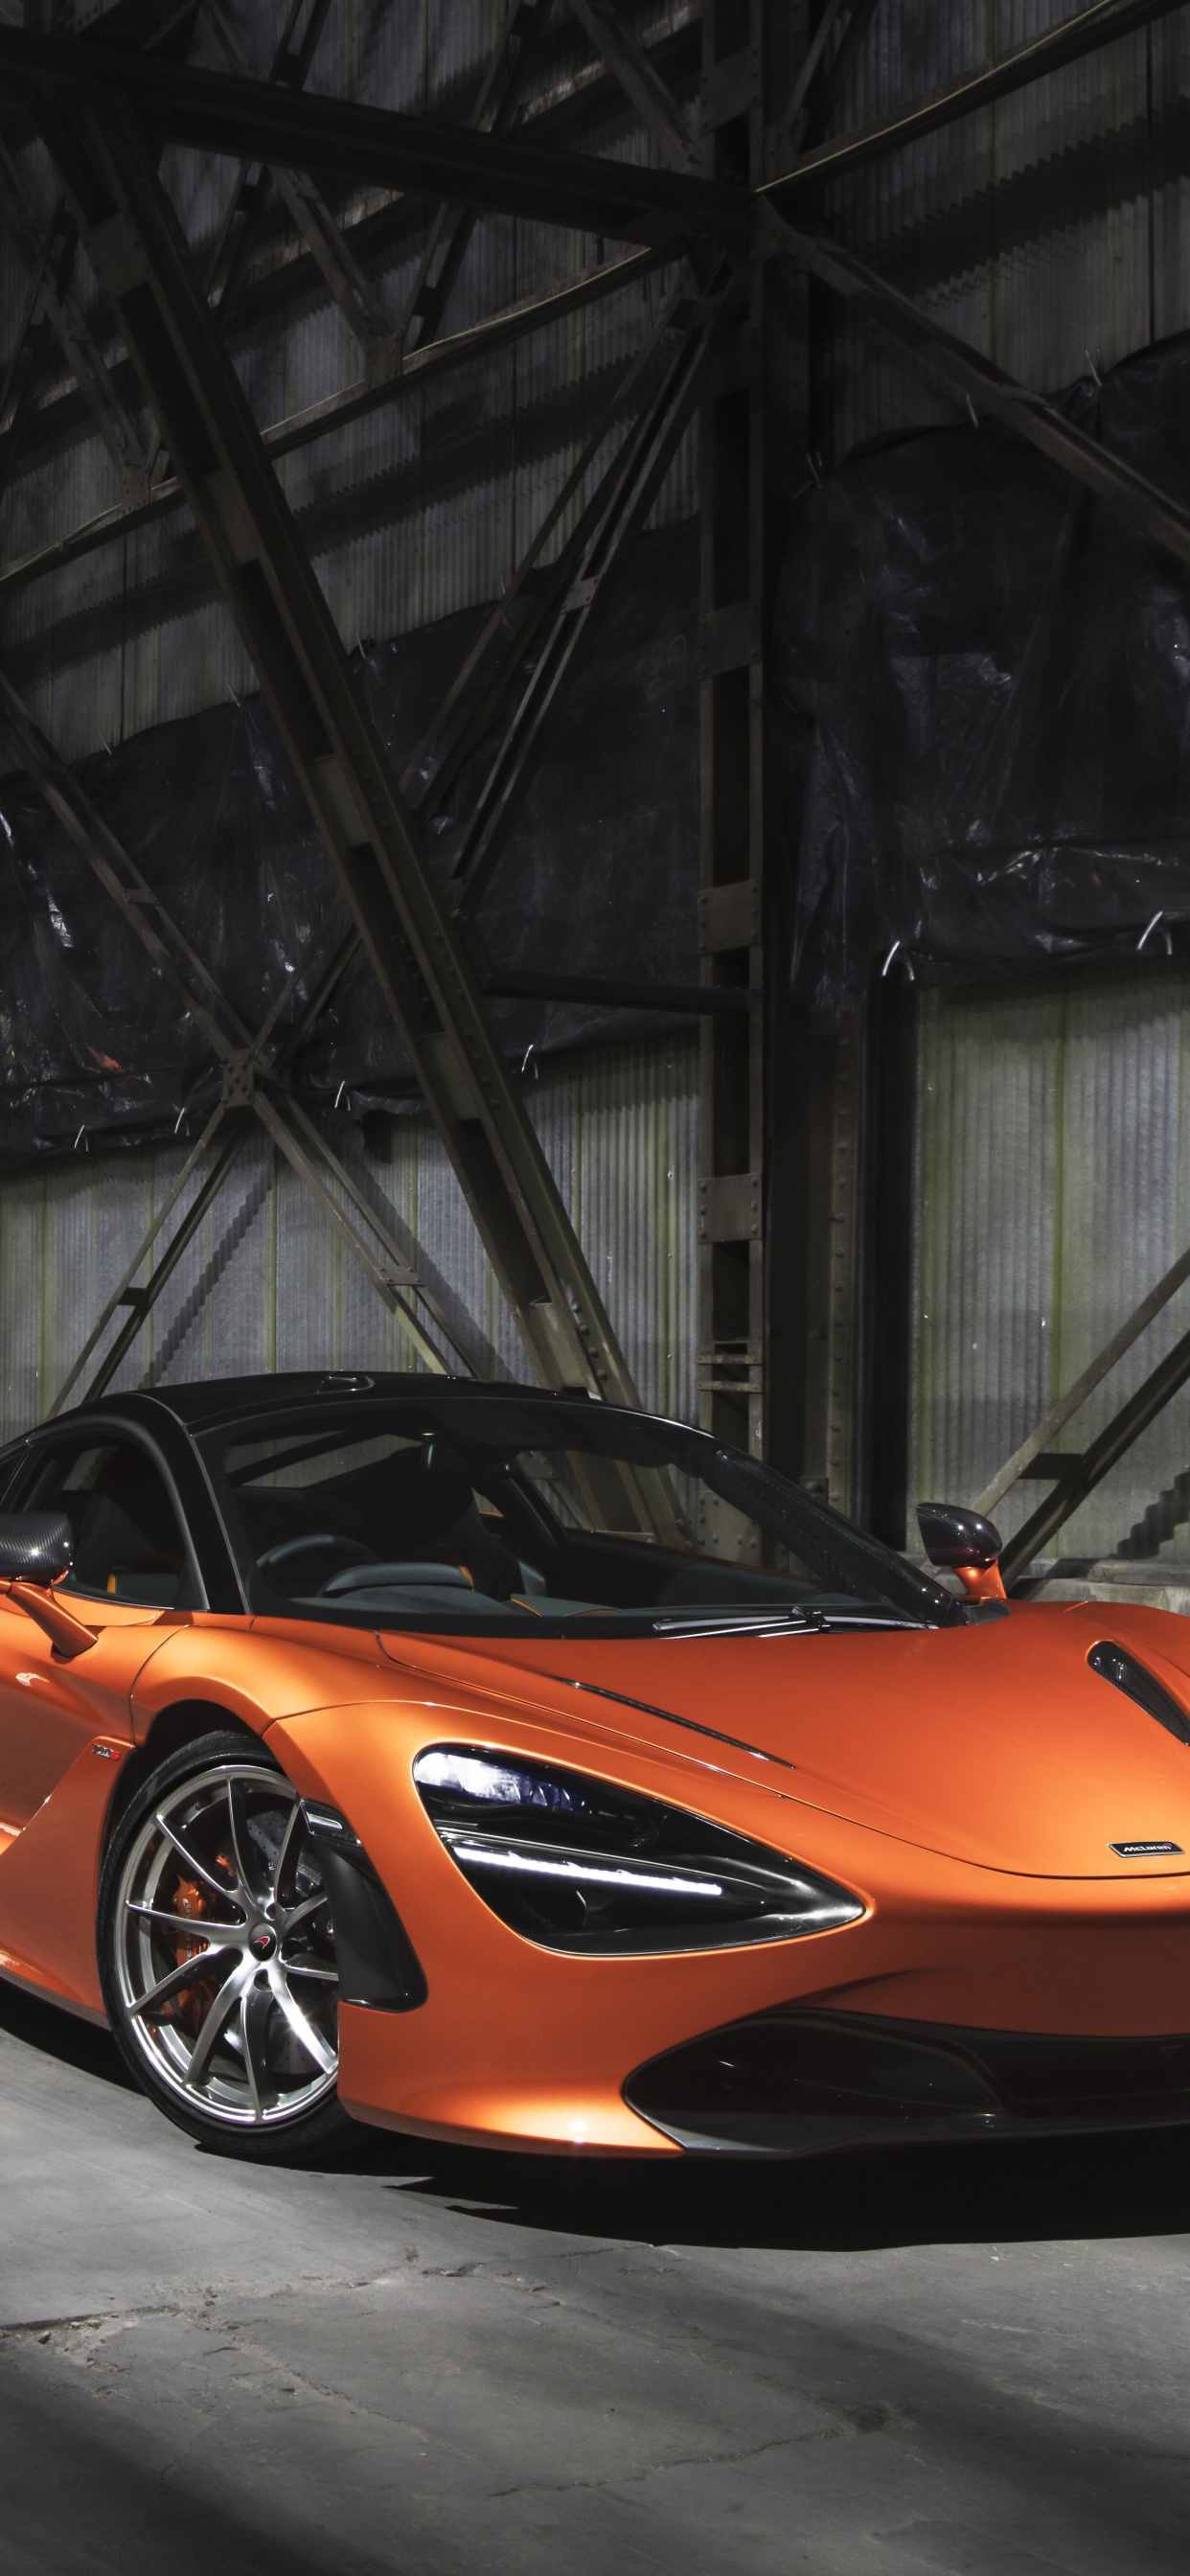 Lamborghini Aventador Orange Dans un Tunnel. Wallpaper in 1242x2688 Resolution